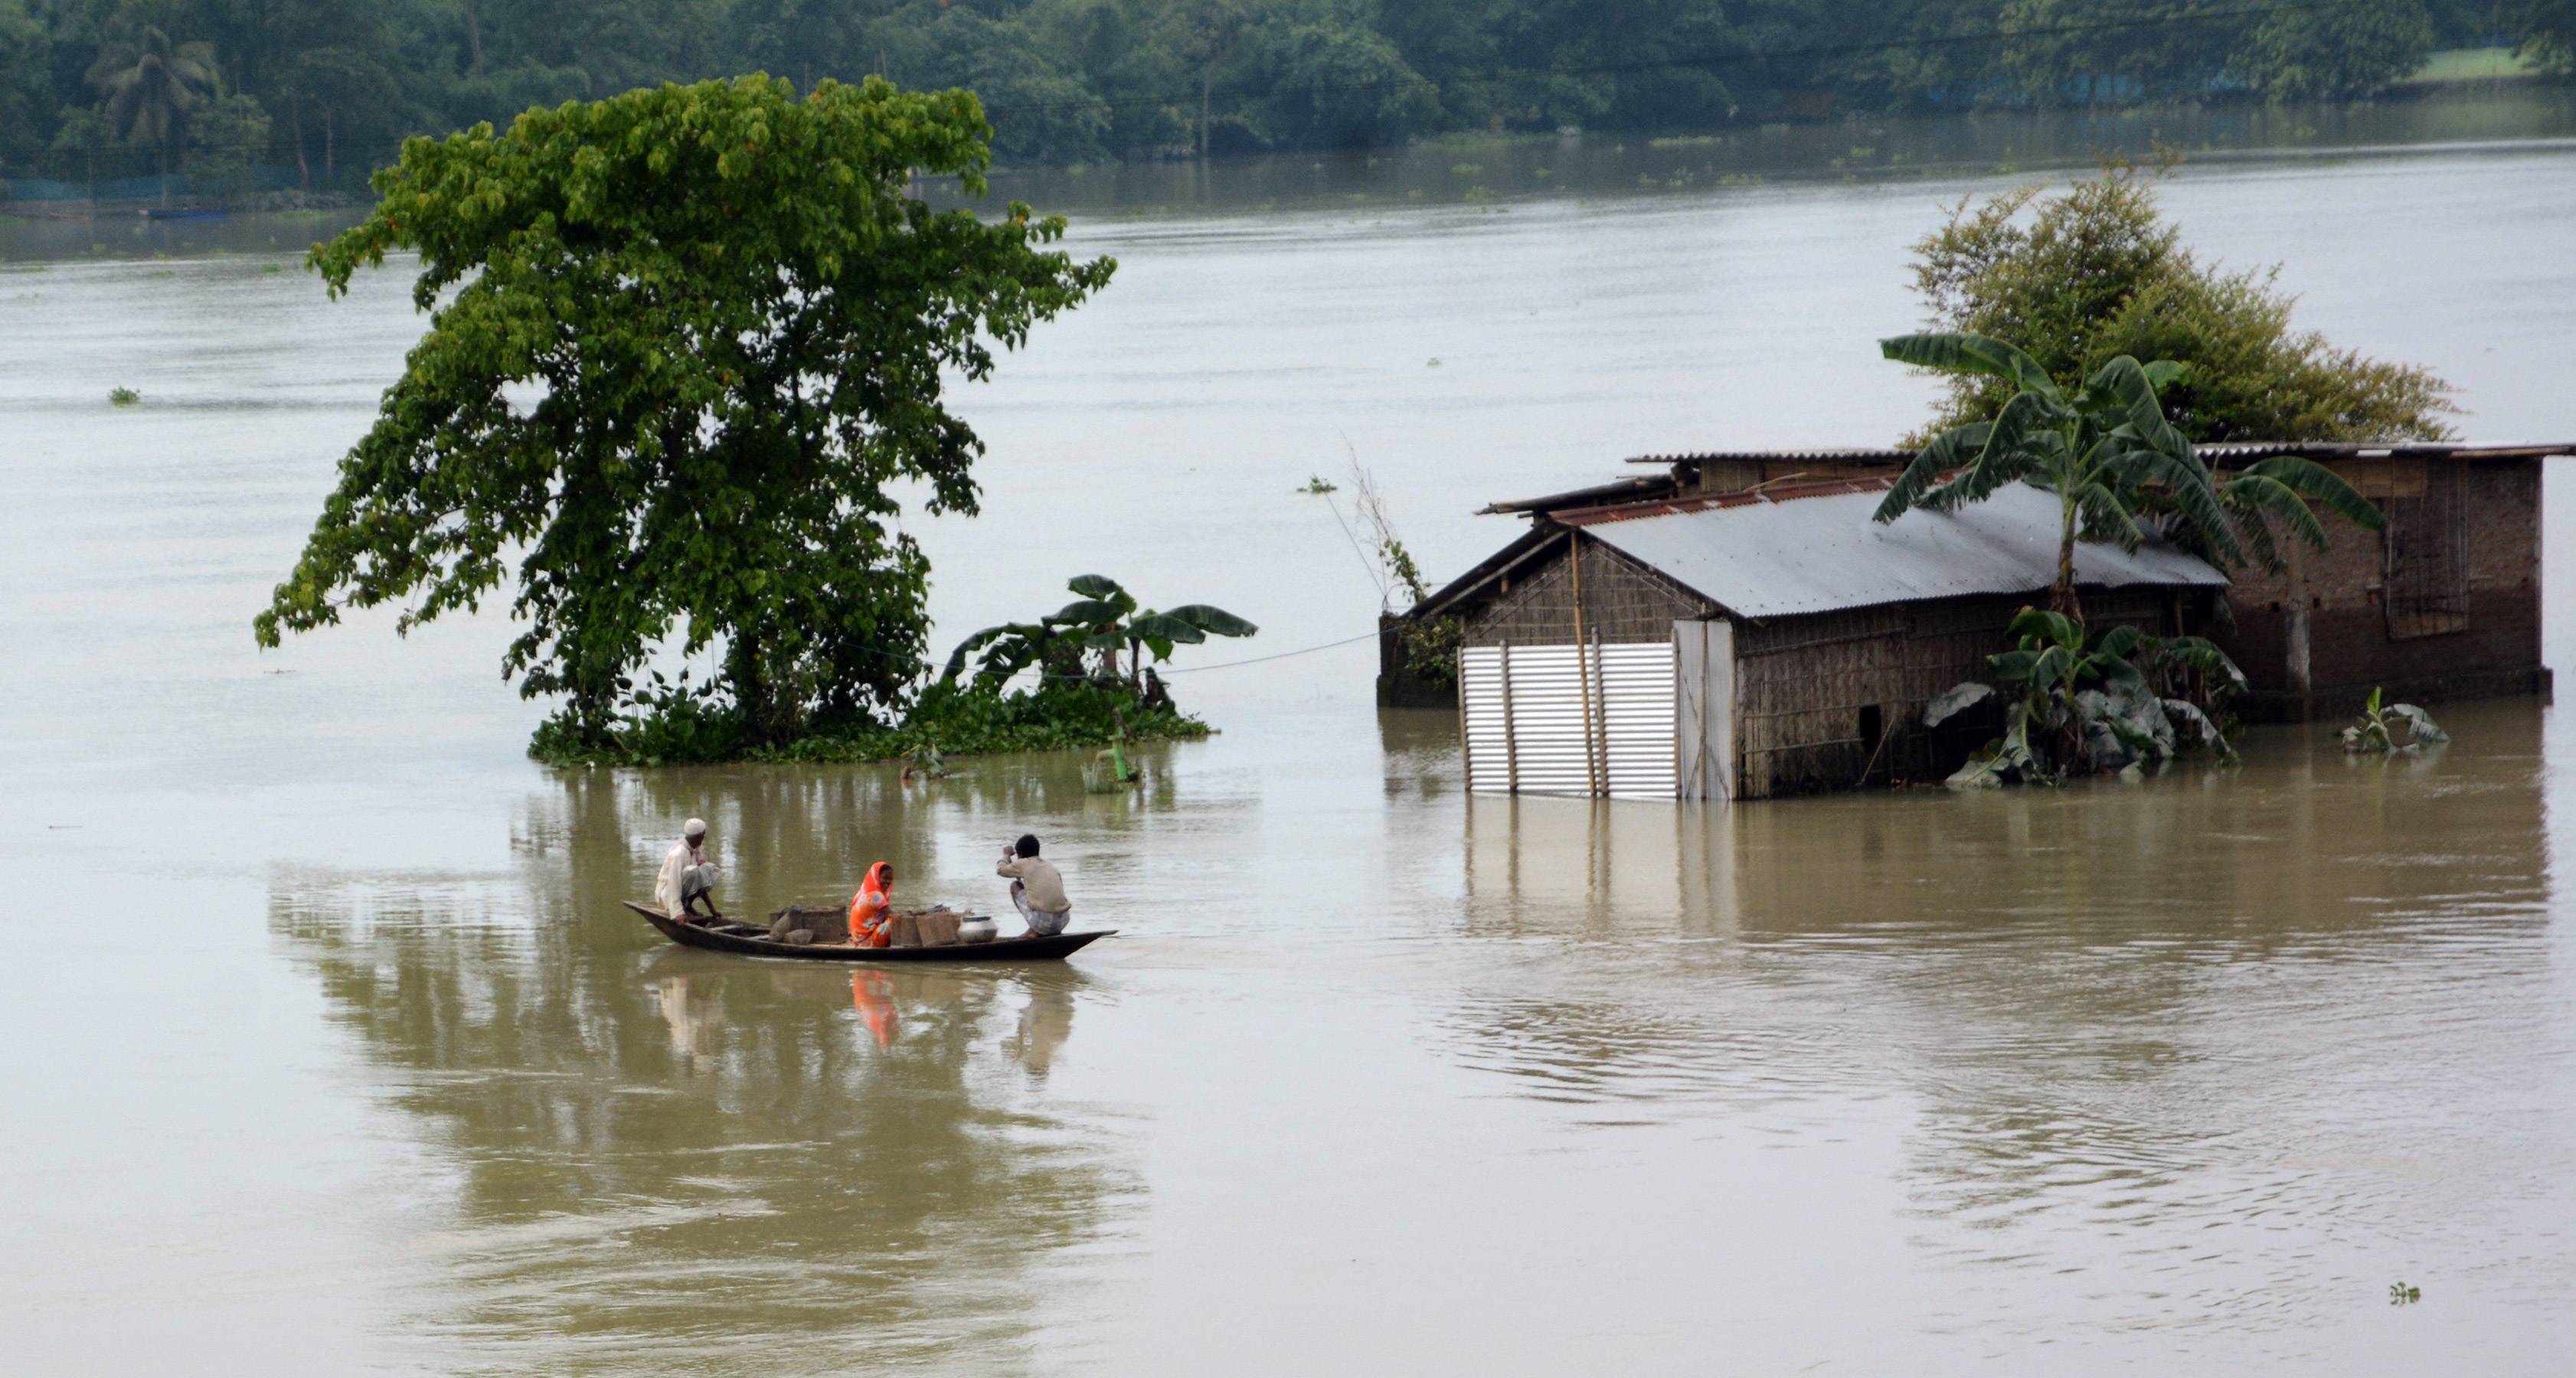 印度近日进入季风雨季,多地遭遇暴雨天气,引发洪涝灾害